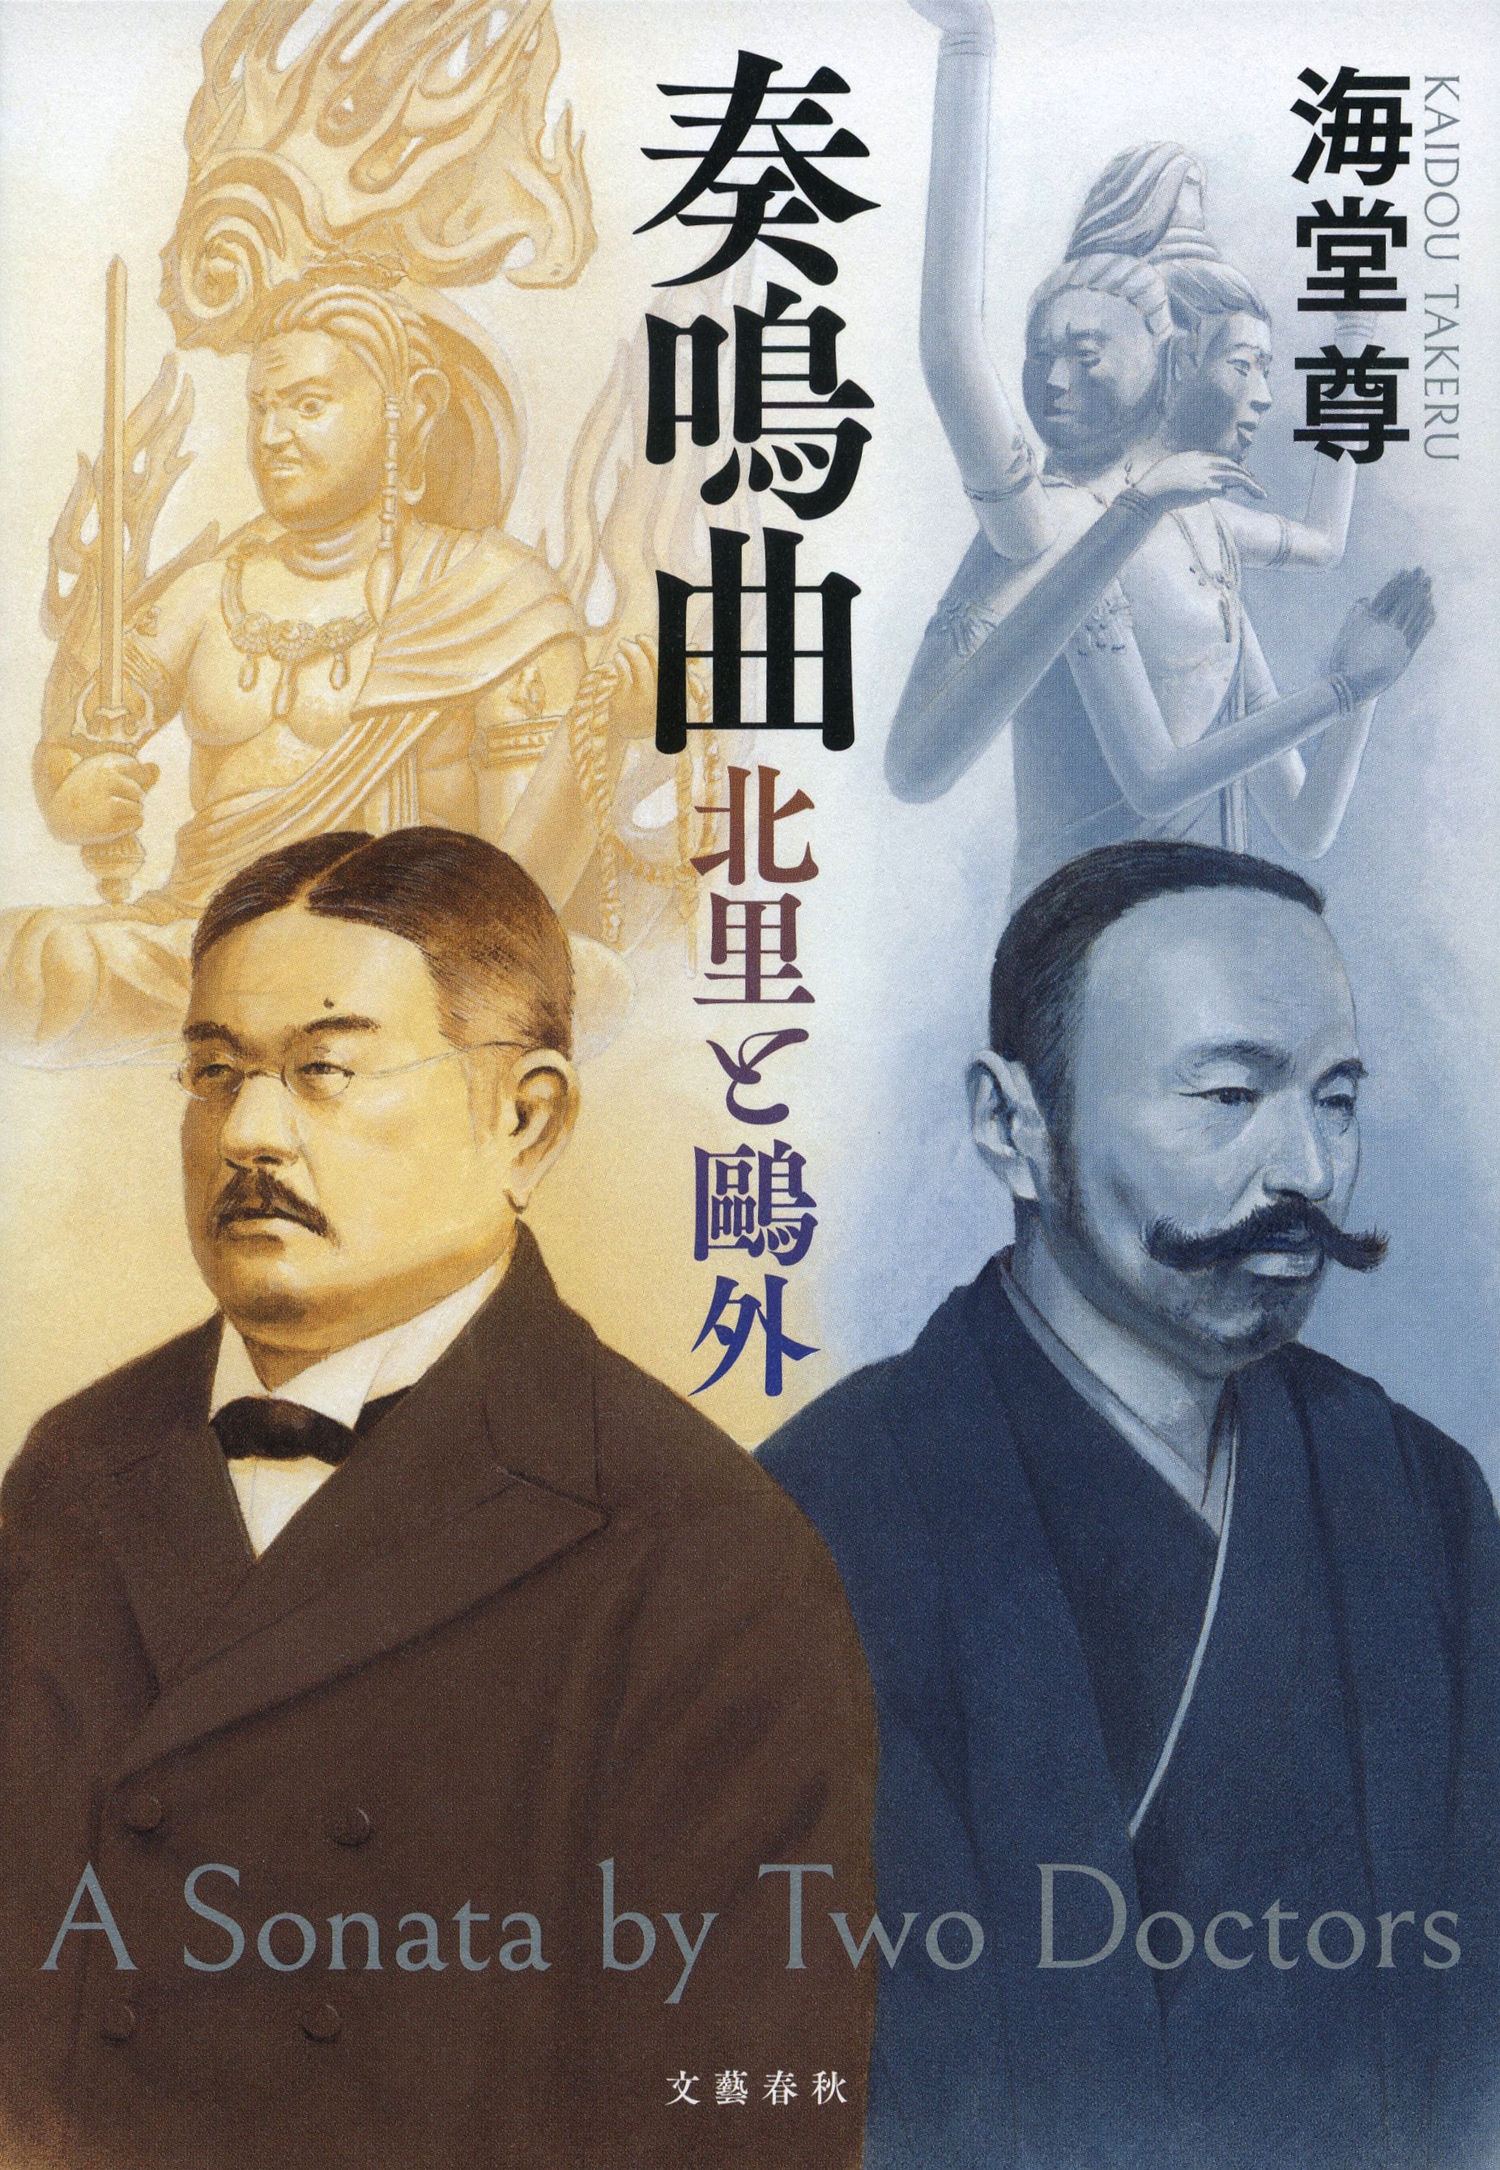 「感染症と闘ってきた明治時代の医師に学ぶことがある」　海堂尊が“北里柴三郎と森鷗外”を通じて描いた“日本の衛生行政”の歴史